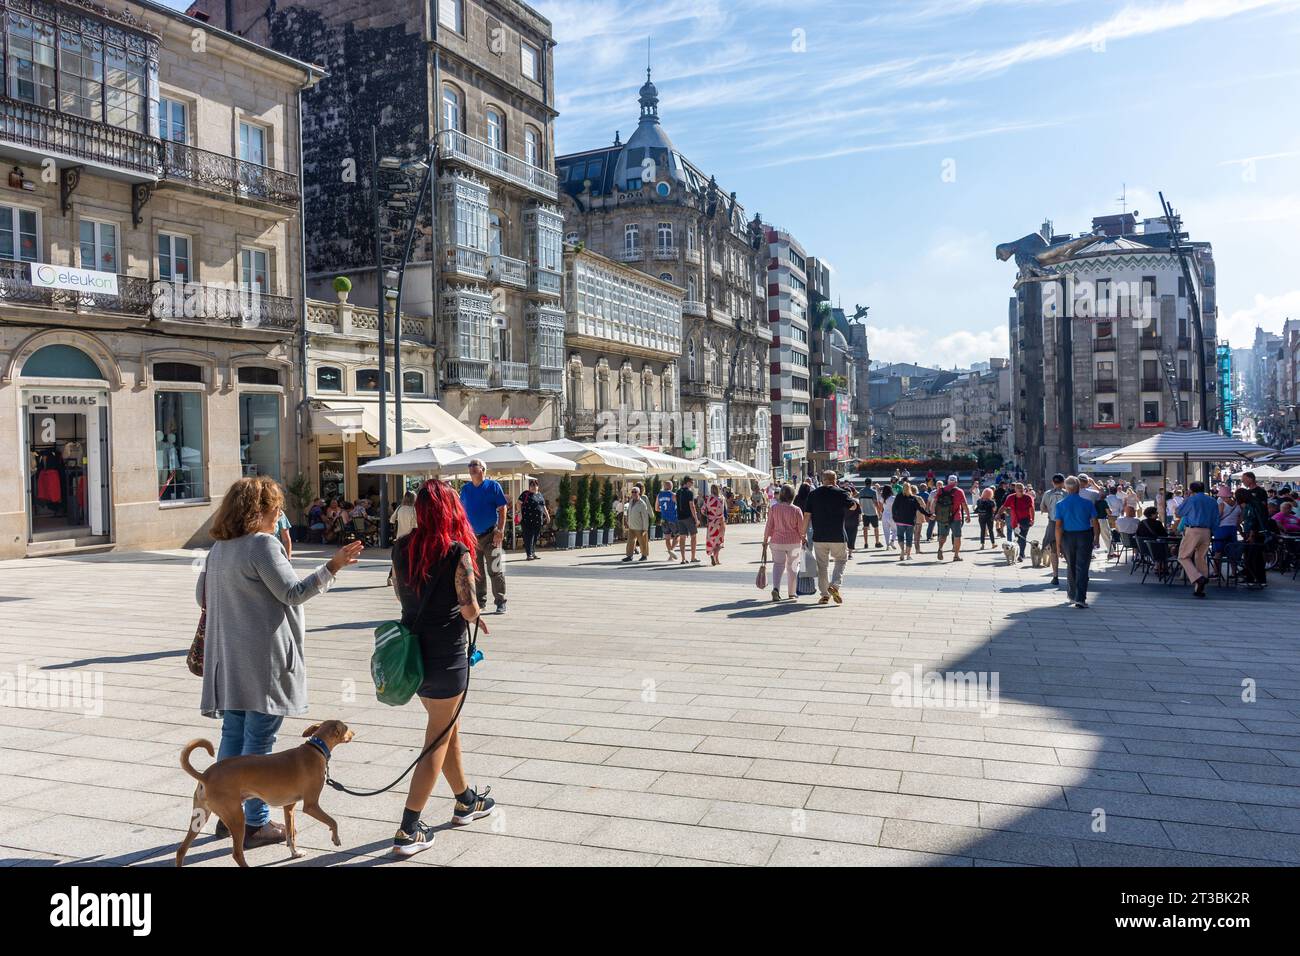 Street scene, Praza Porta do Sol, Old Town, Vigo, Province of Pontevedra, Galicia, Kingdom of Spain Stock Photo